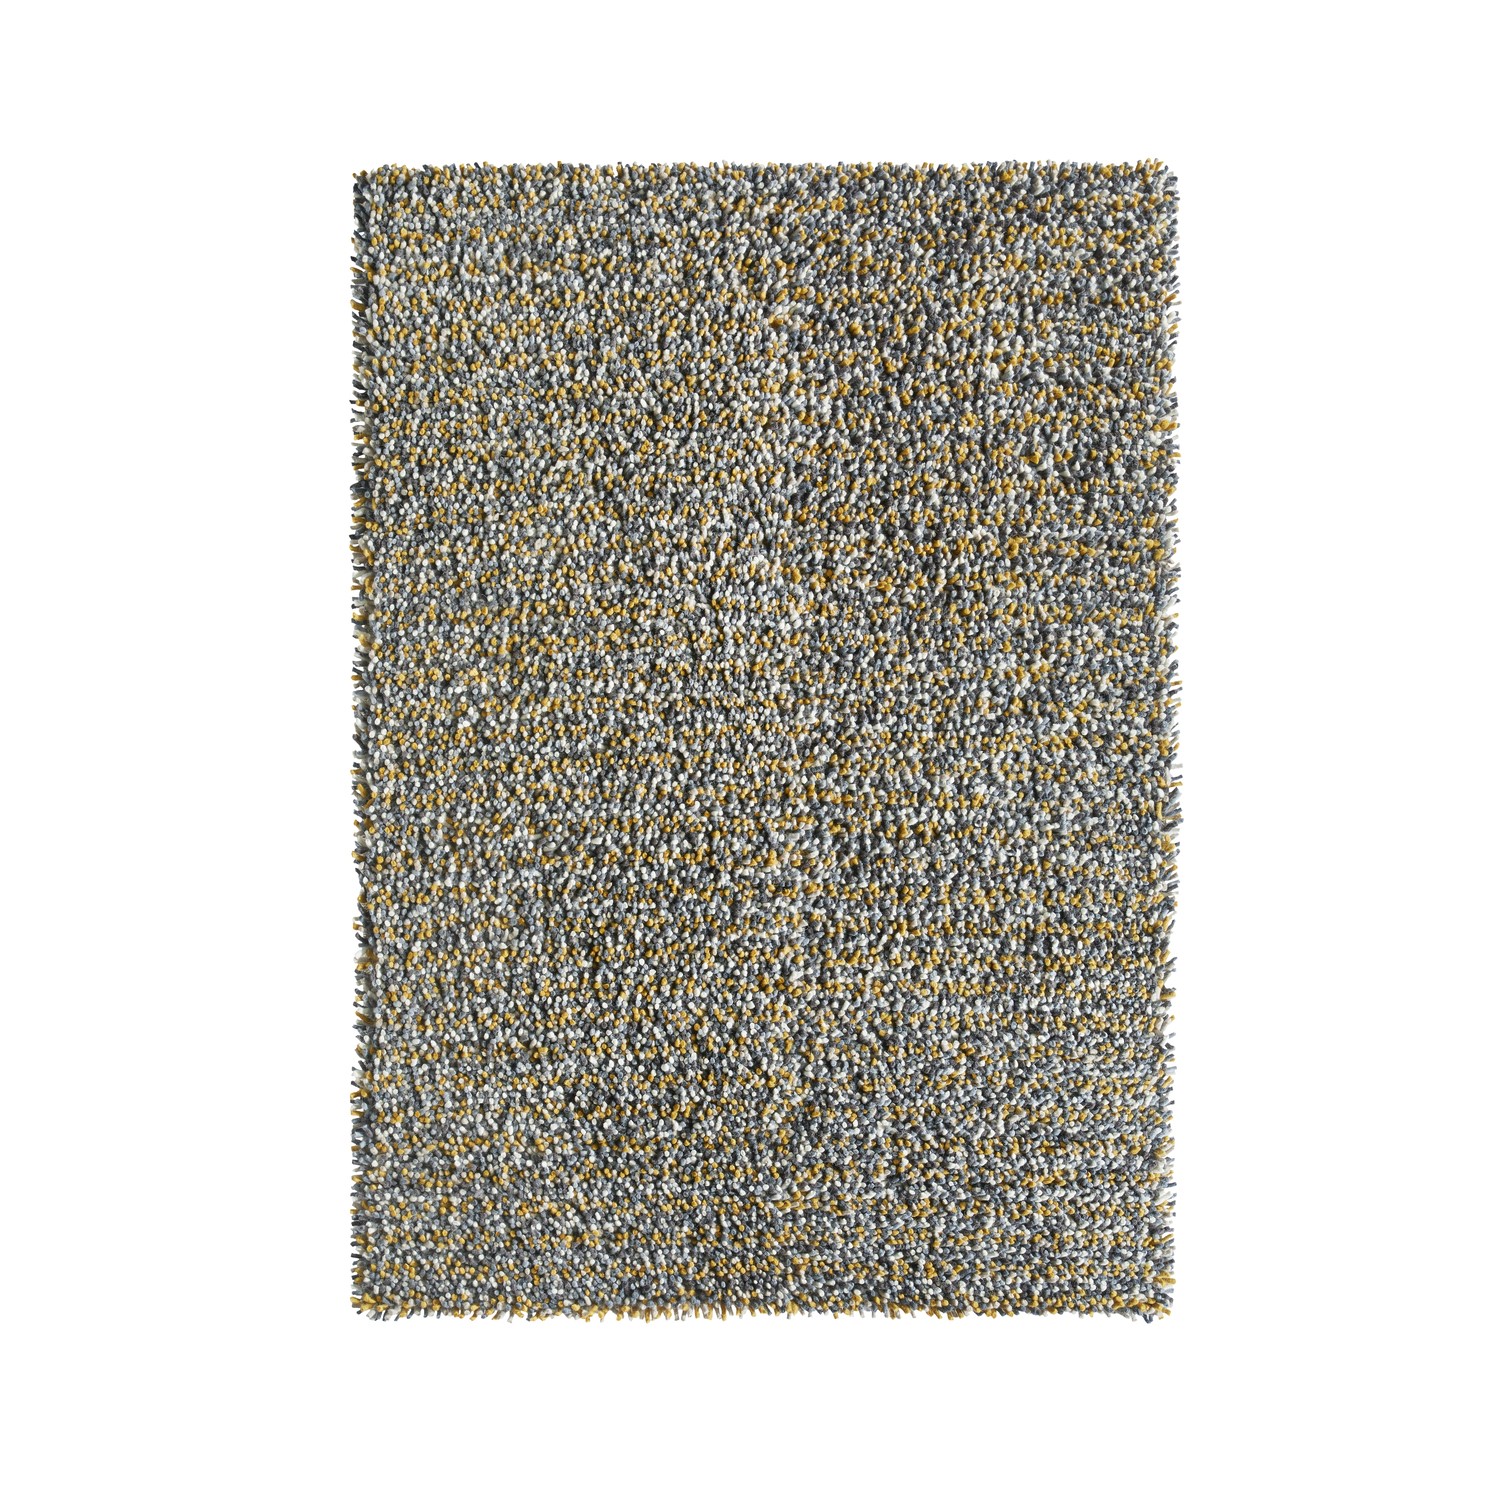 Photo of Ripley rocks shaggy rug in ochre - 160x230cm